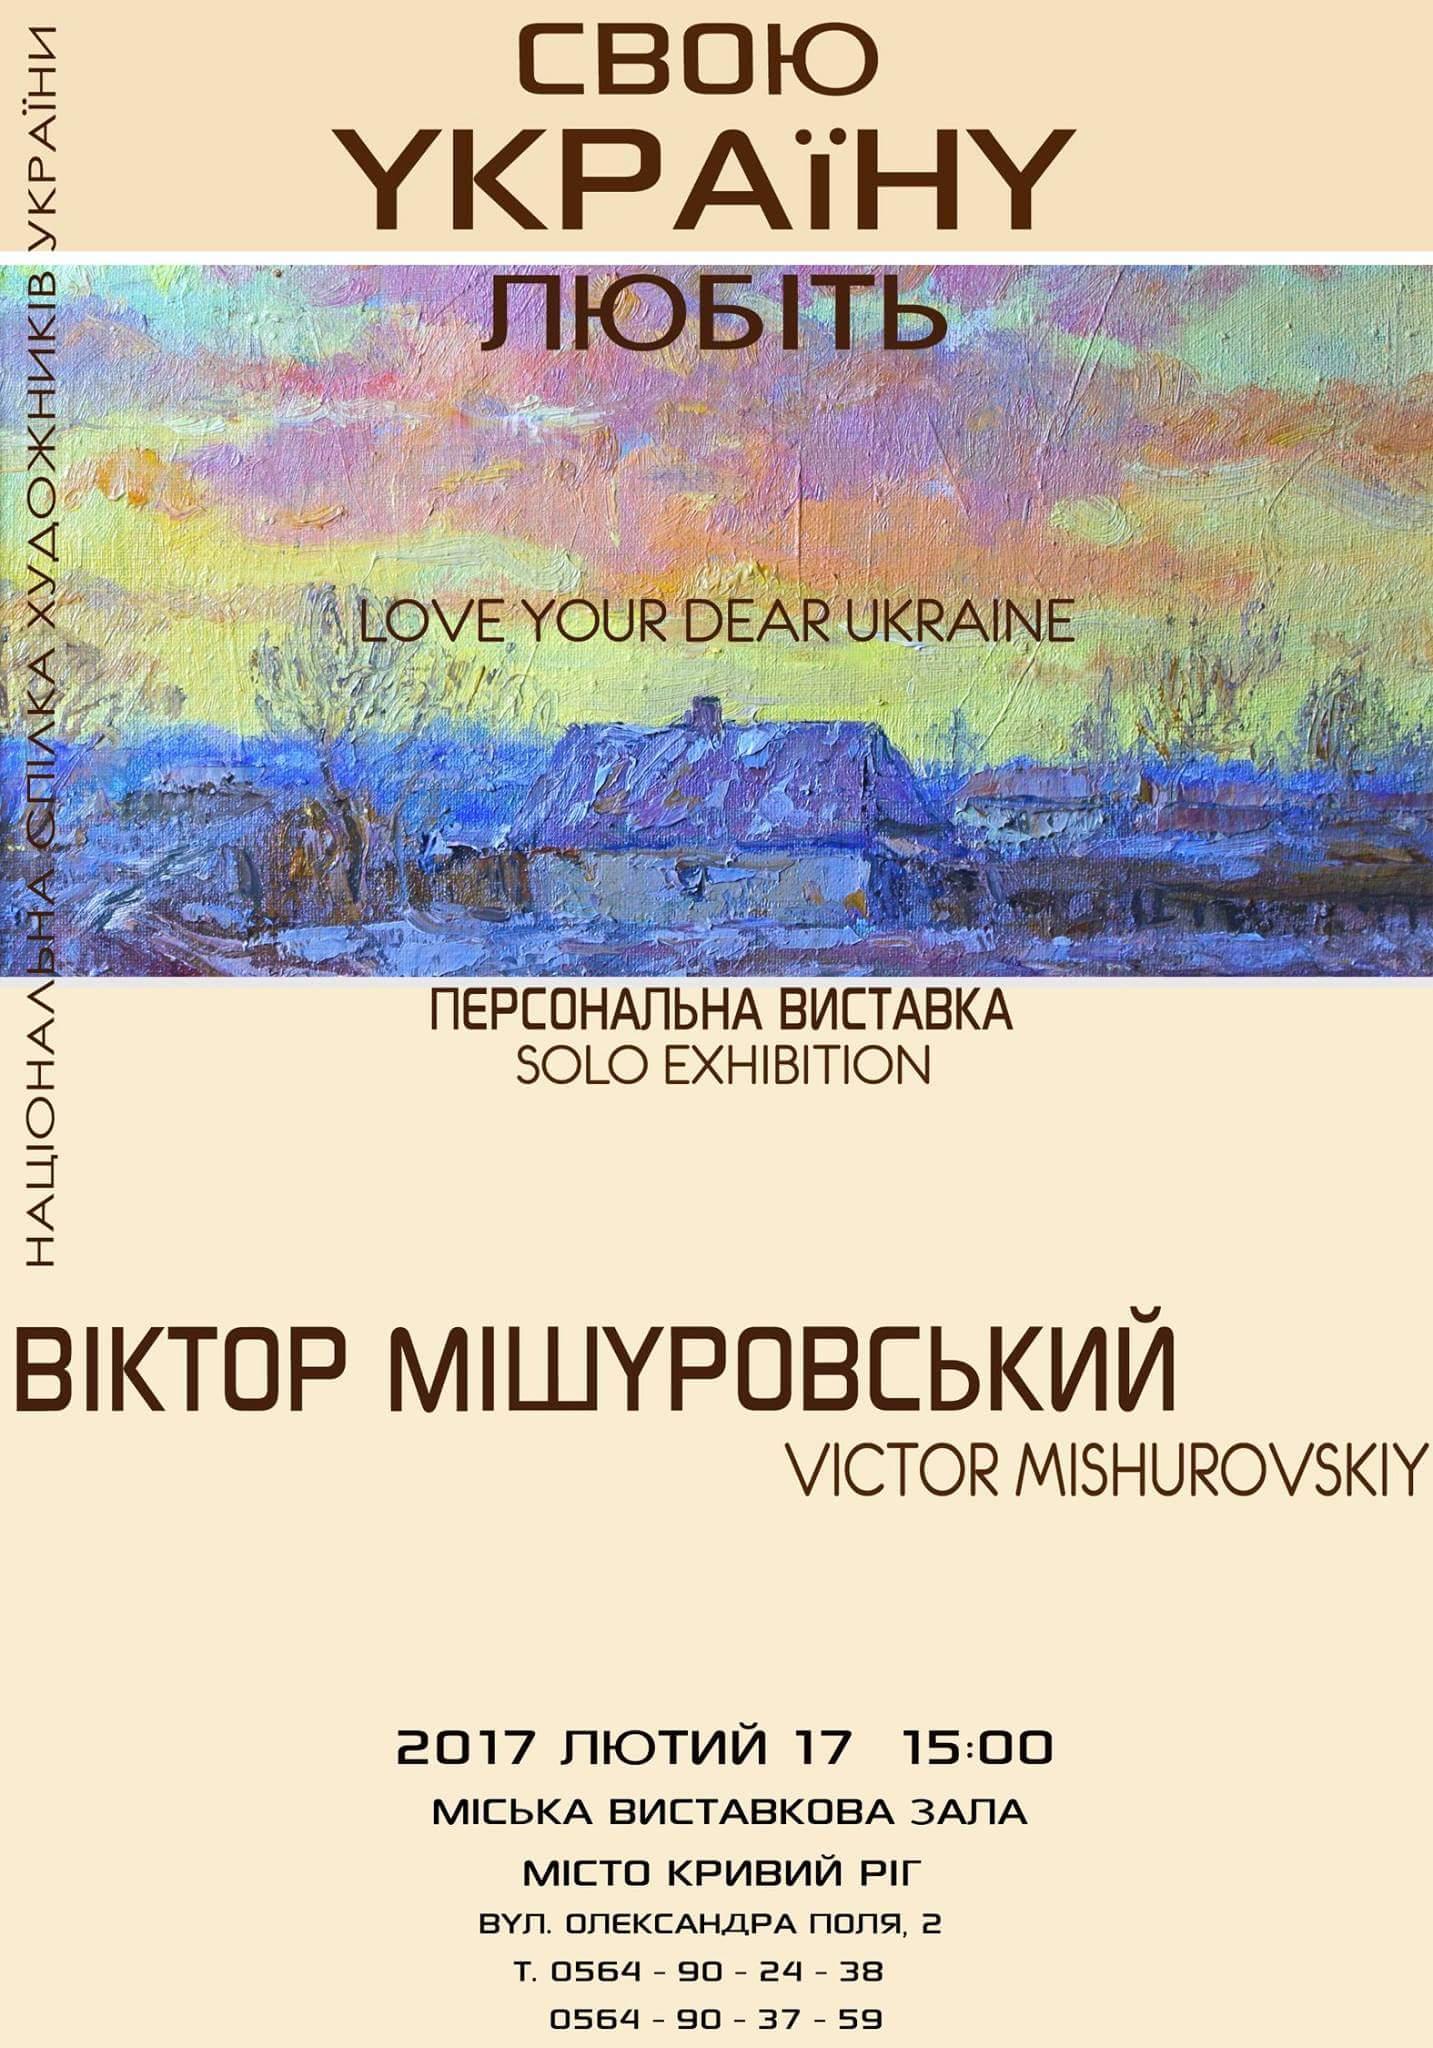 Mishurovskiy 17.02.2017